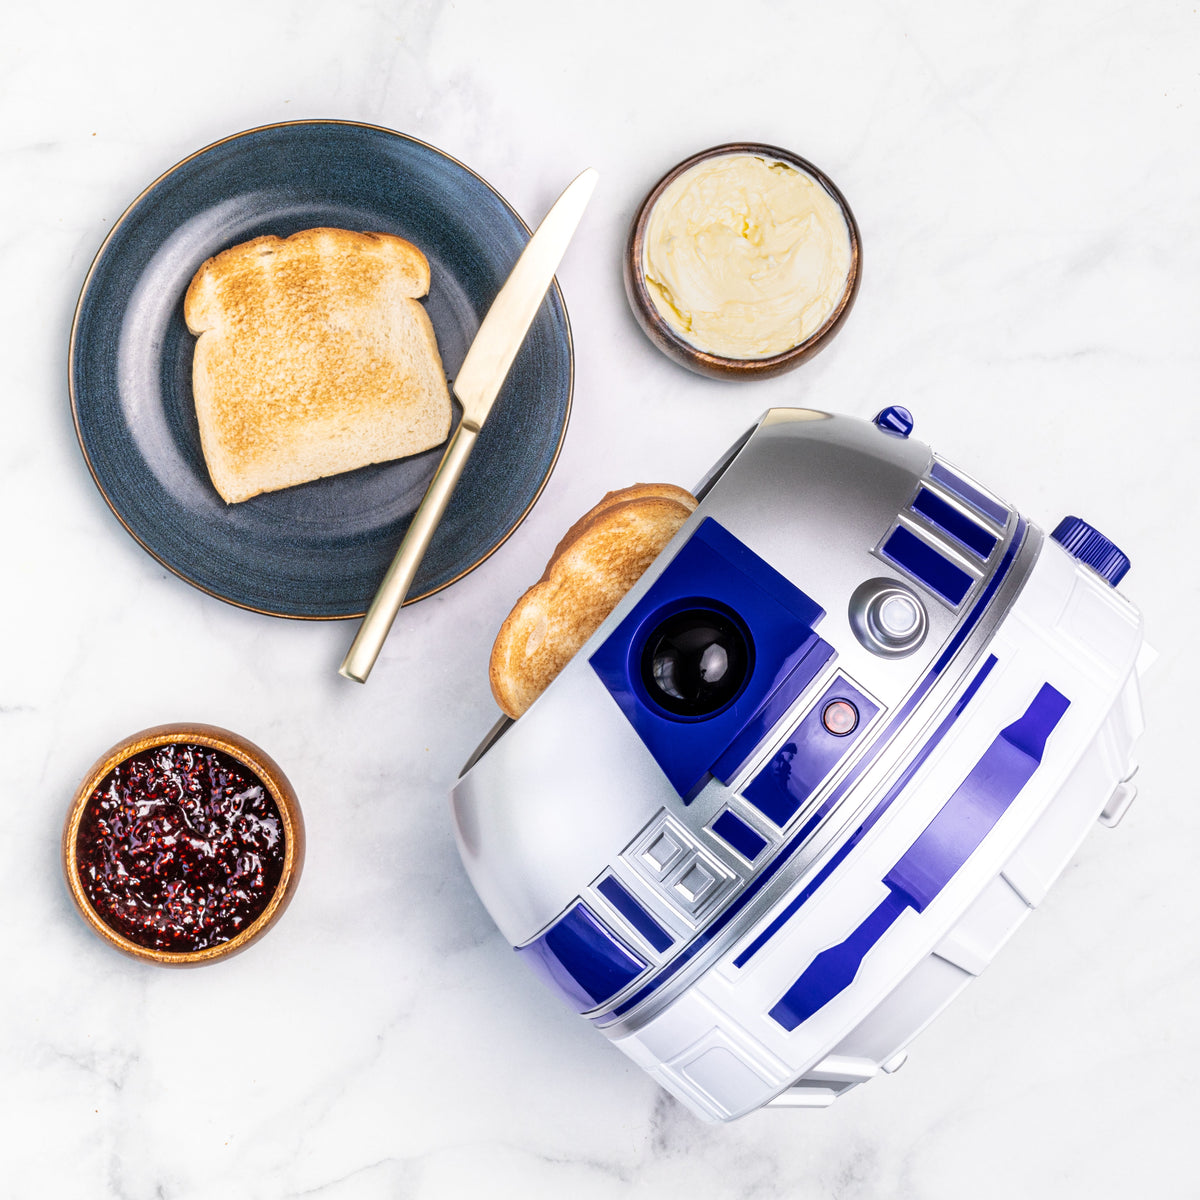 30 Star Wars Kitchen Products